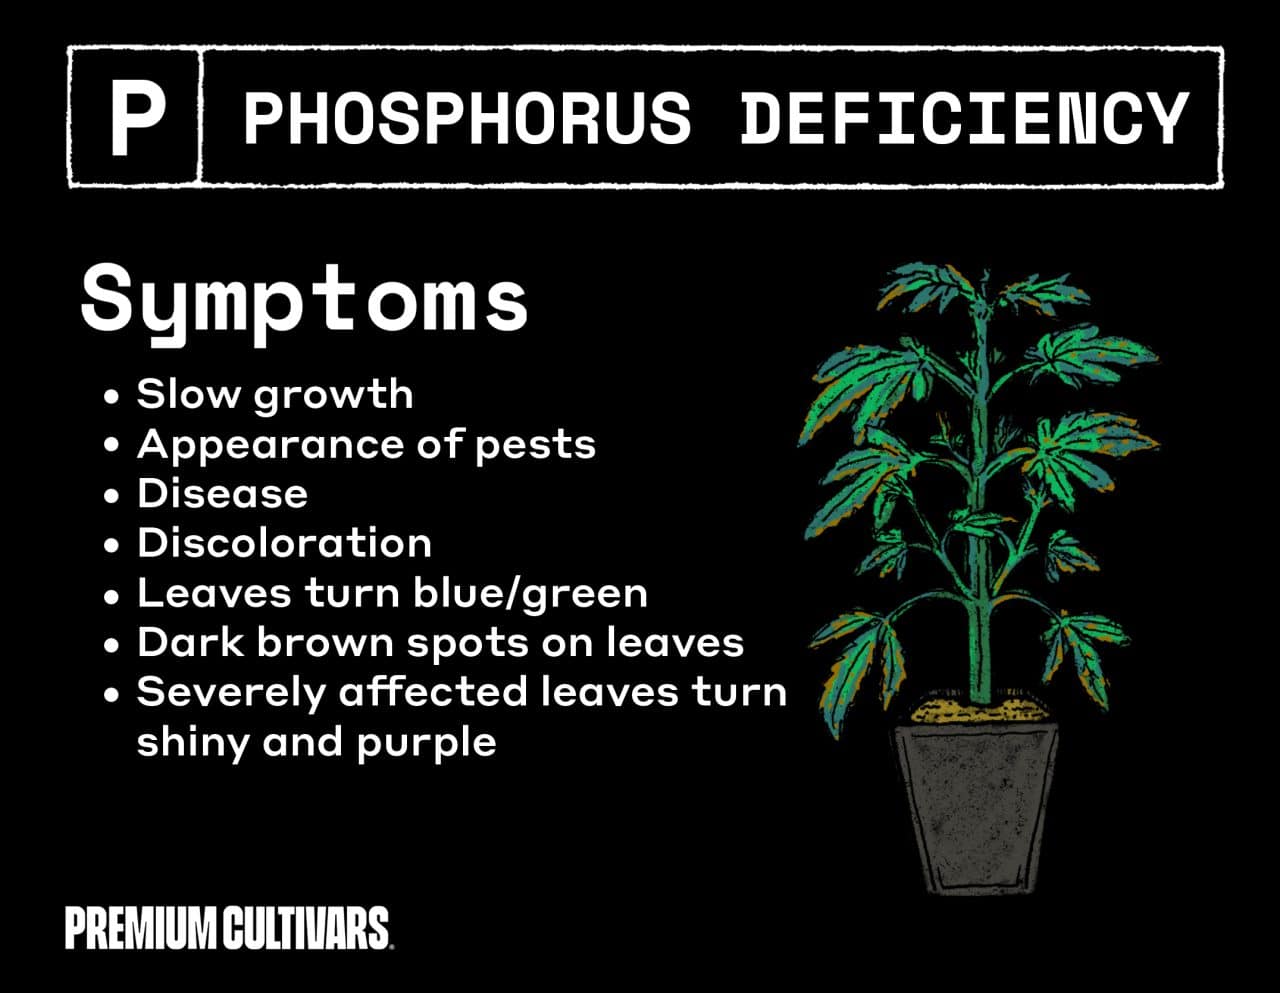 Phosphorus deficiency cannabis symptoms